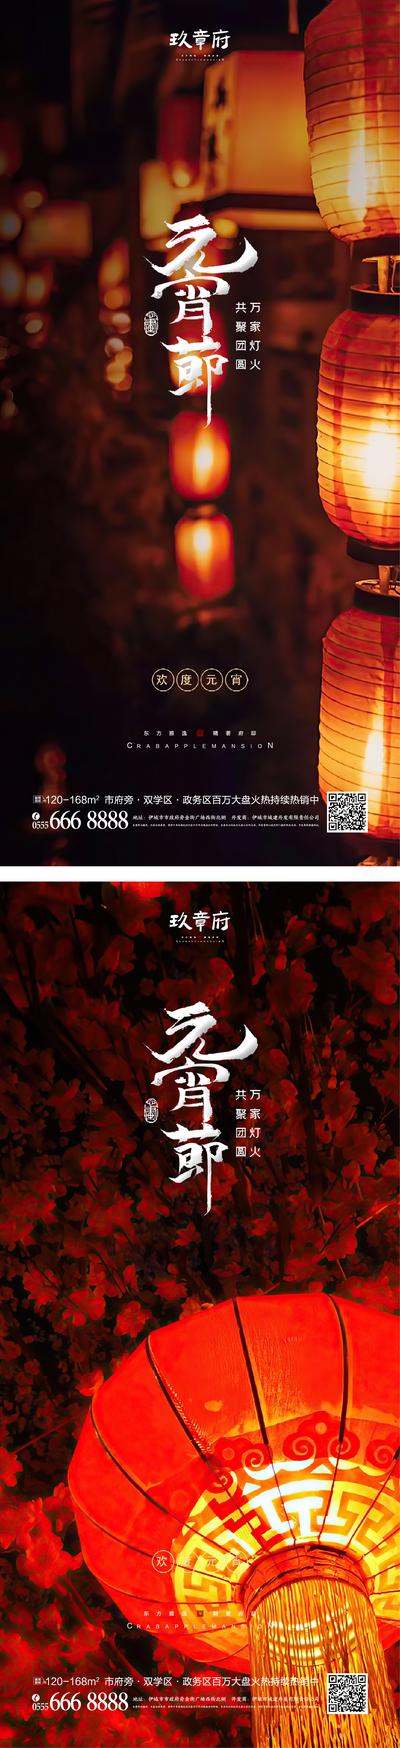 南门网 海报 中国传统节日 房地产 元宵节 正月十五 猜灯谜 灯笼 喜庆 系列